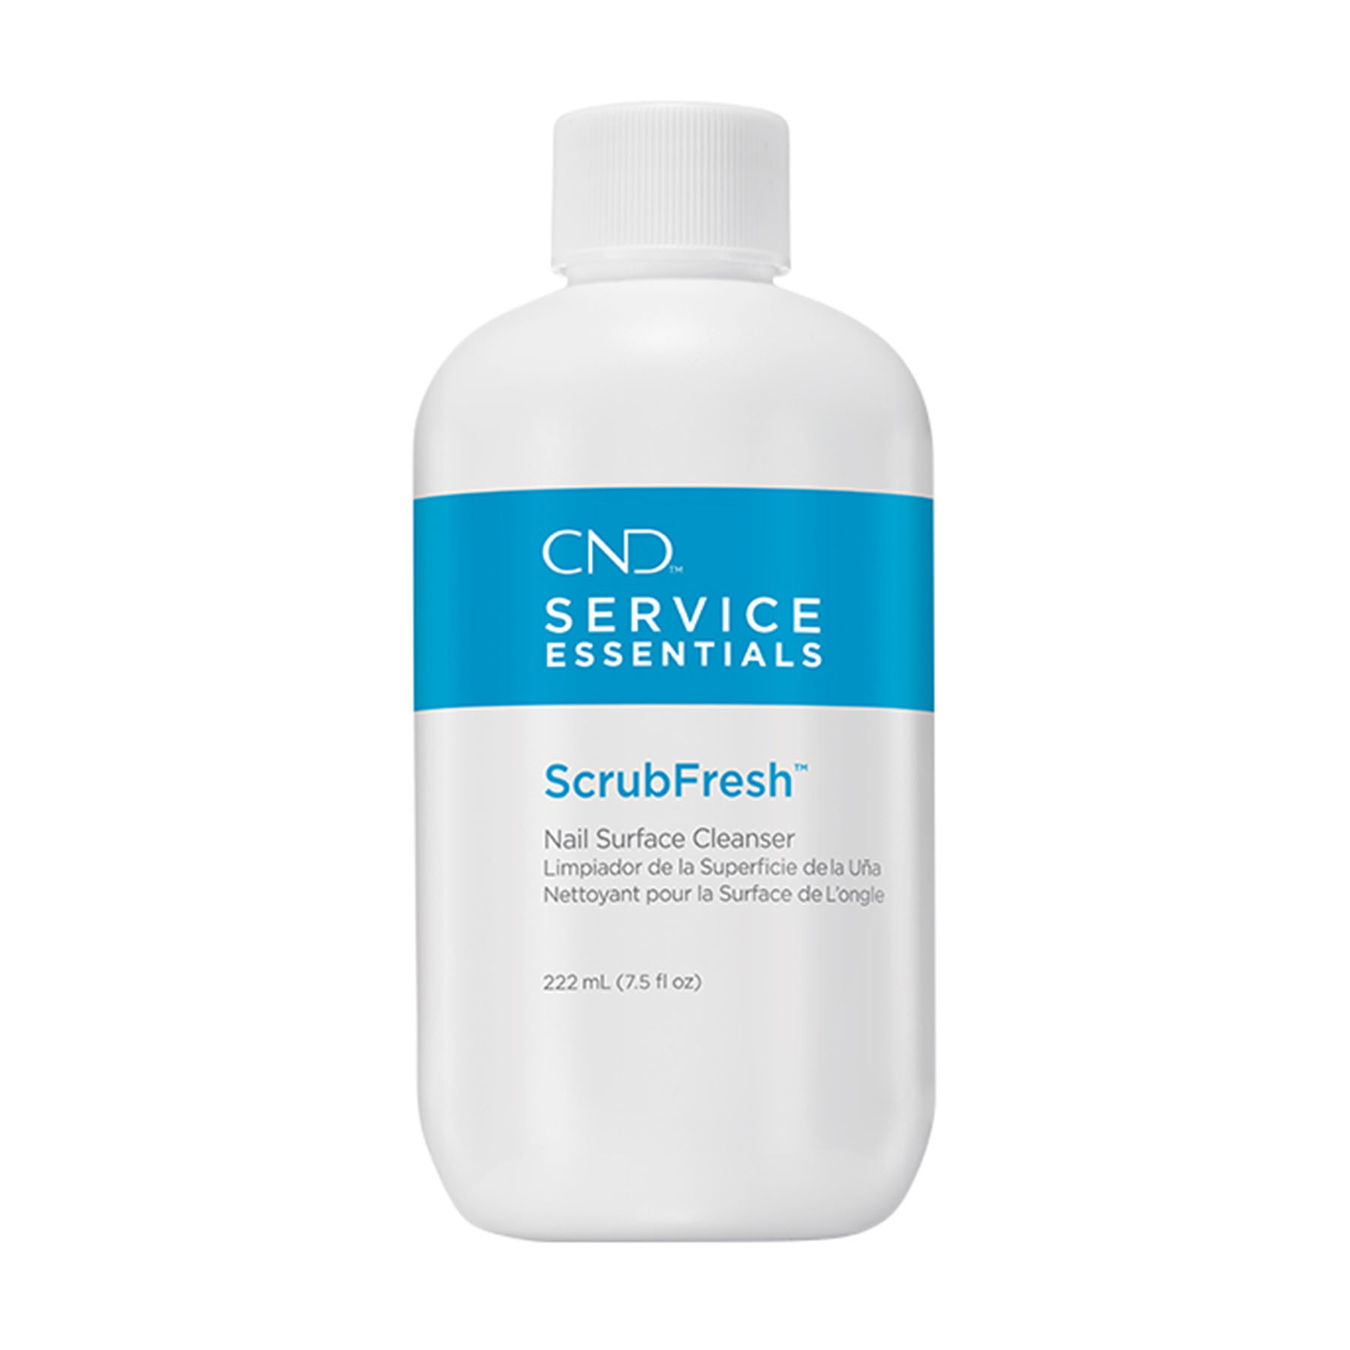 CND SERVICE ESSENTIALS ScrubFresh Nail Surface Cleanser 222ml von Cnd